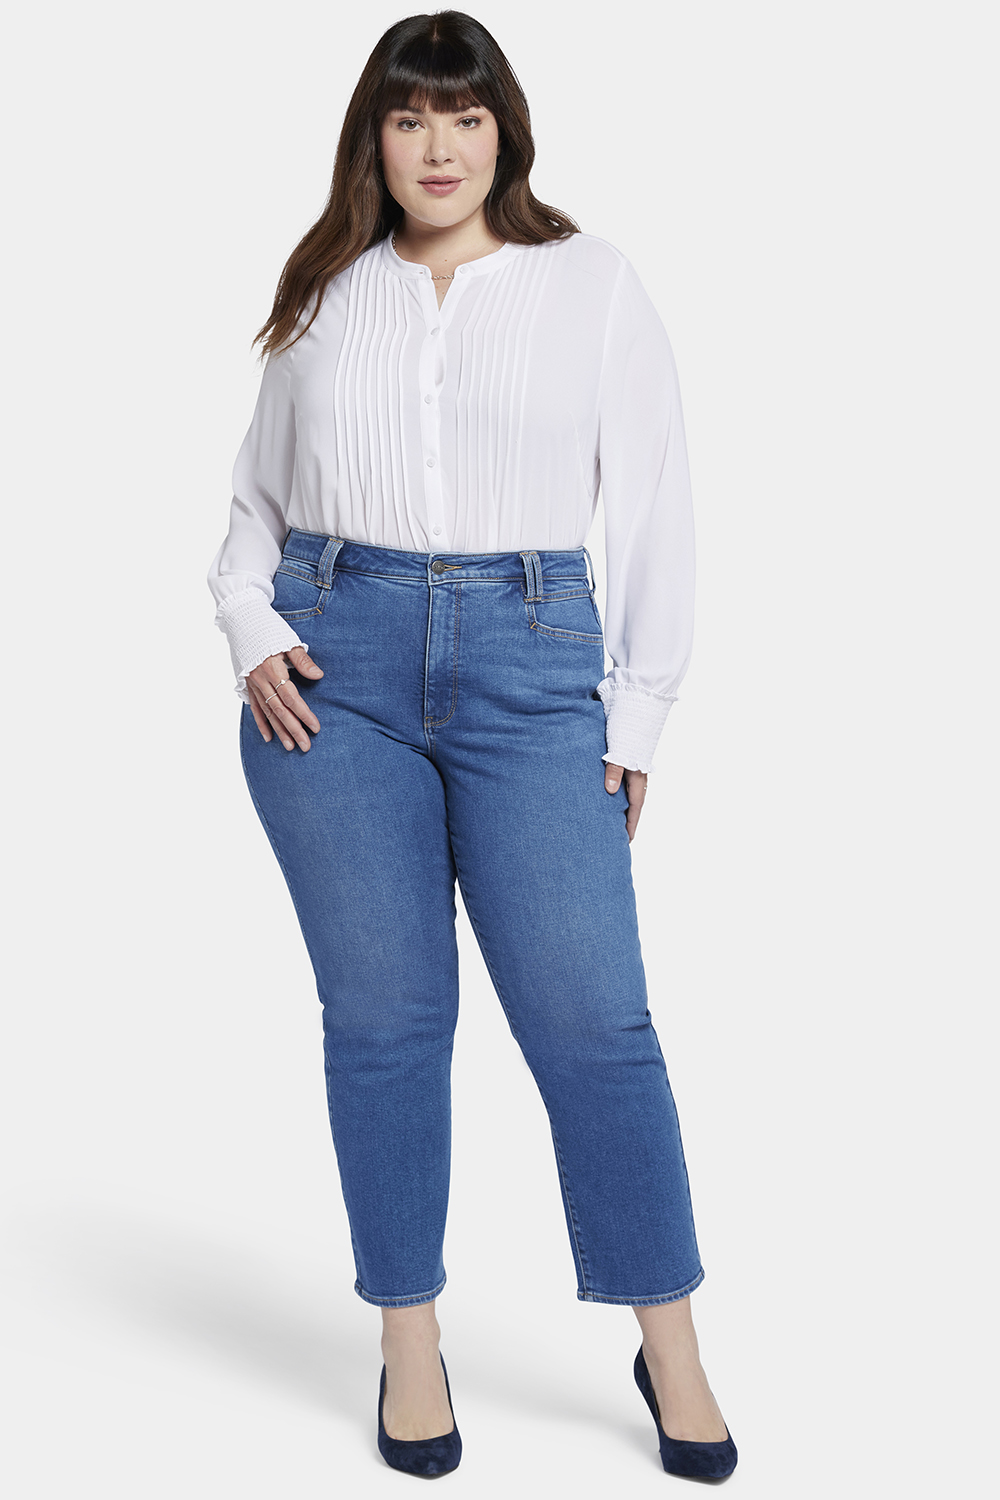 Women's Plus Size Jeans - Straight, Wide Leg & Skinny